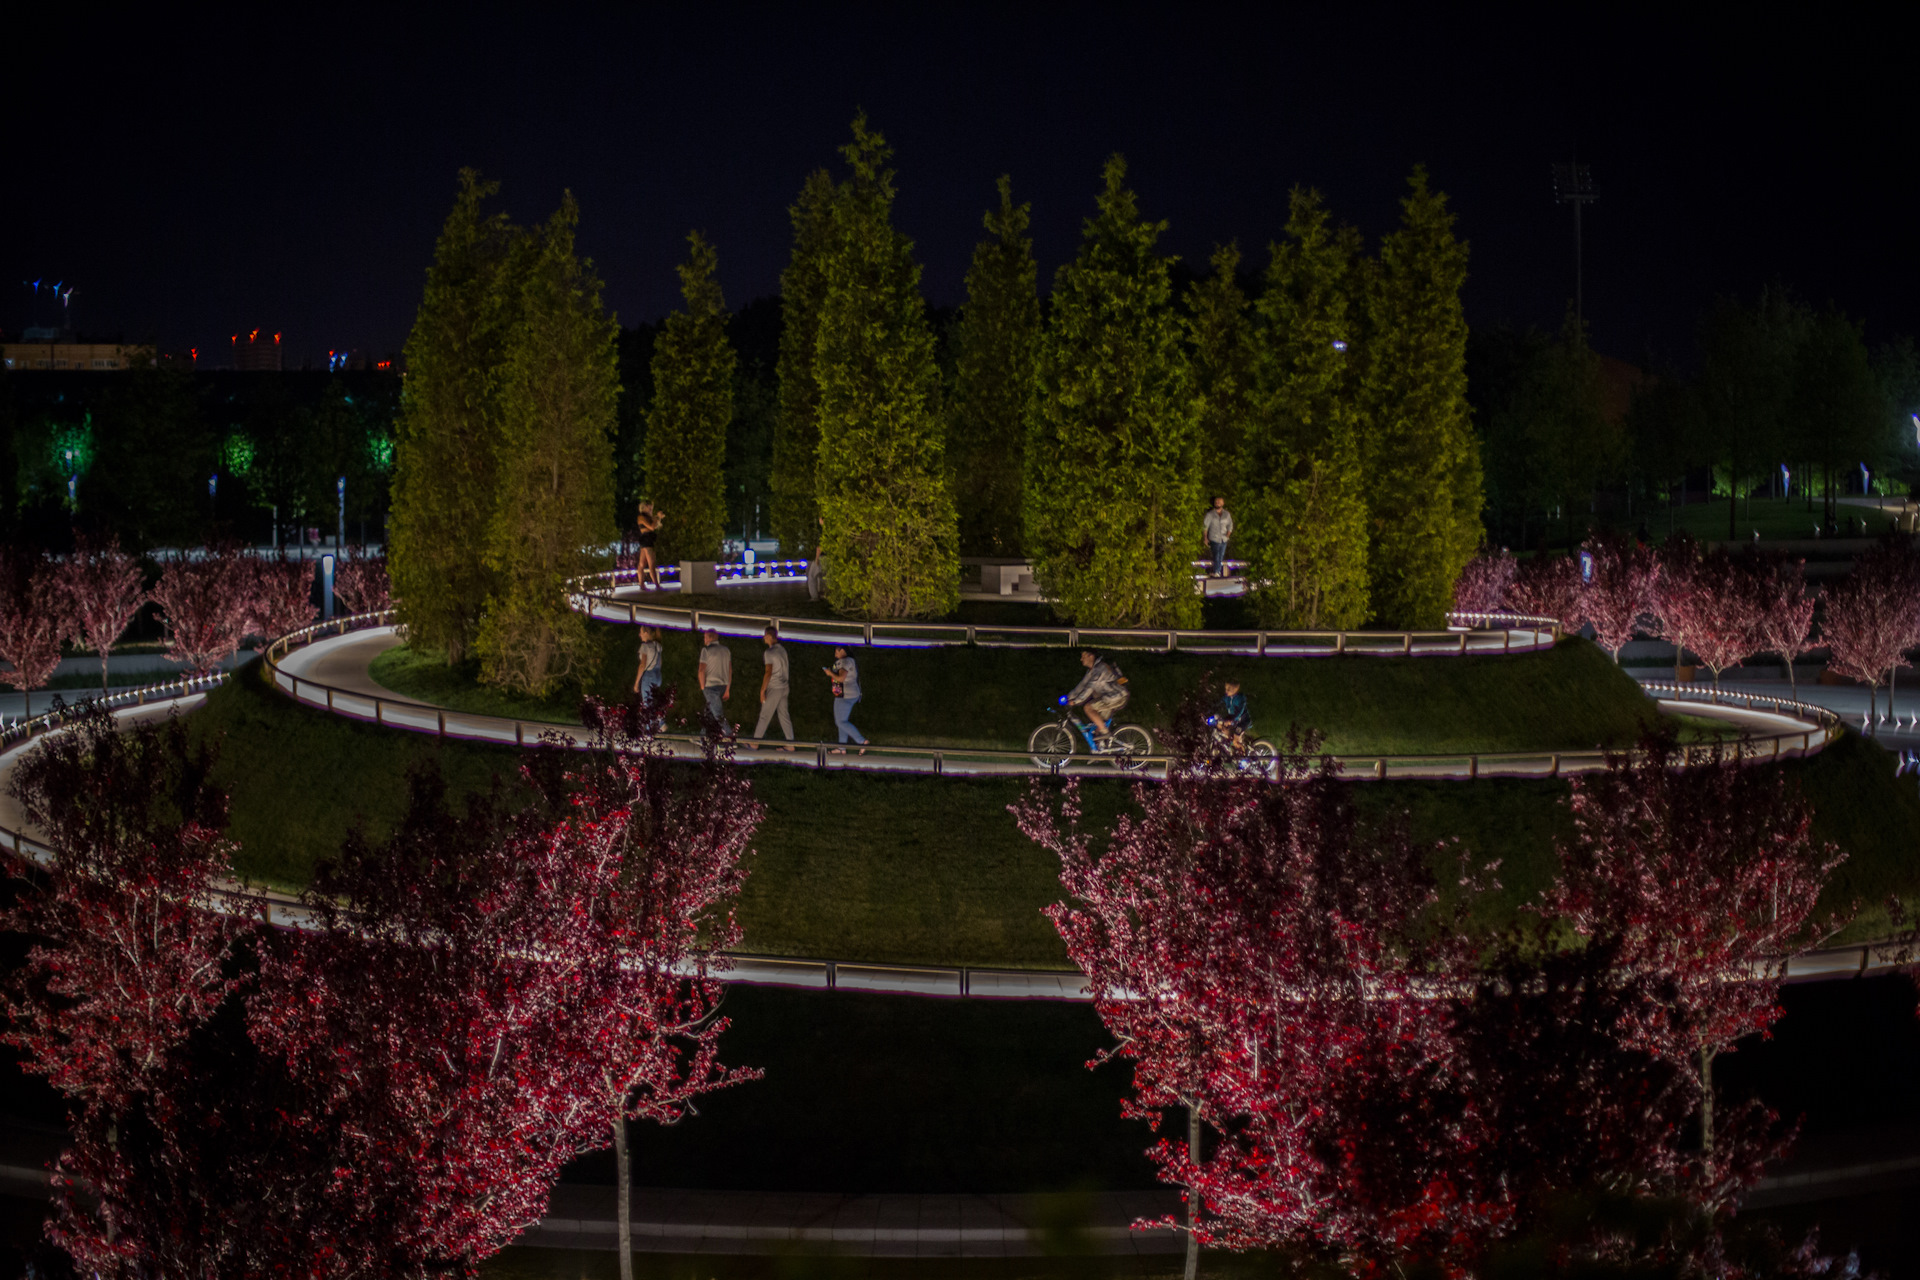 Вечерний парк галицкого в краснодаре фото